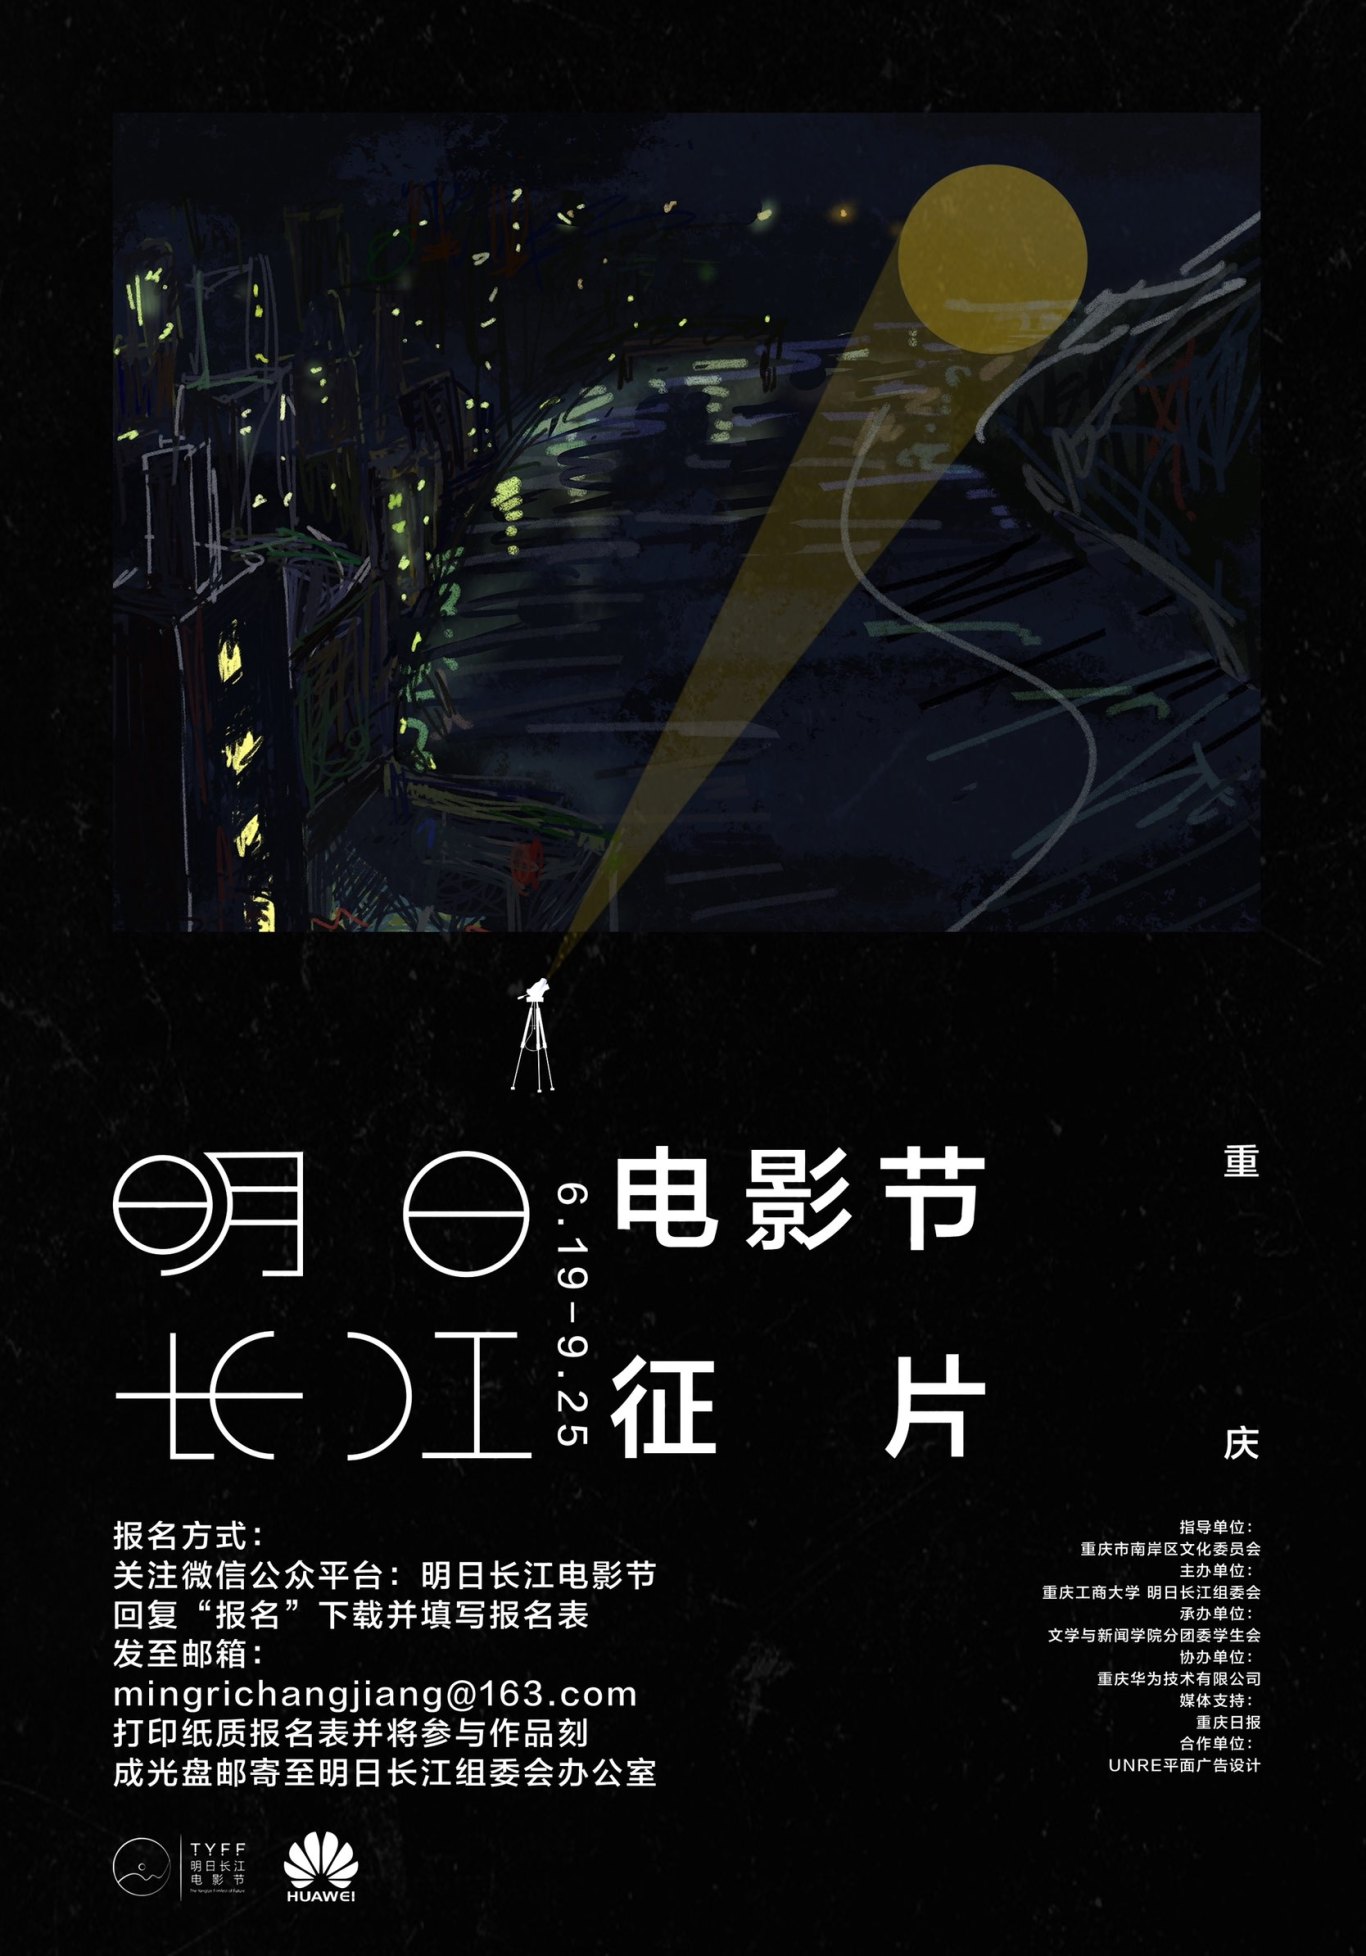 明日长江电影节征片海报设计图0